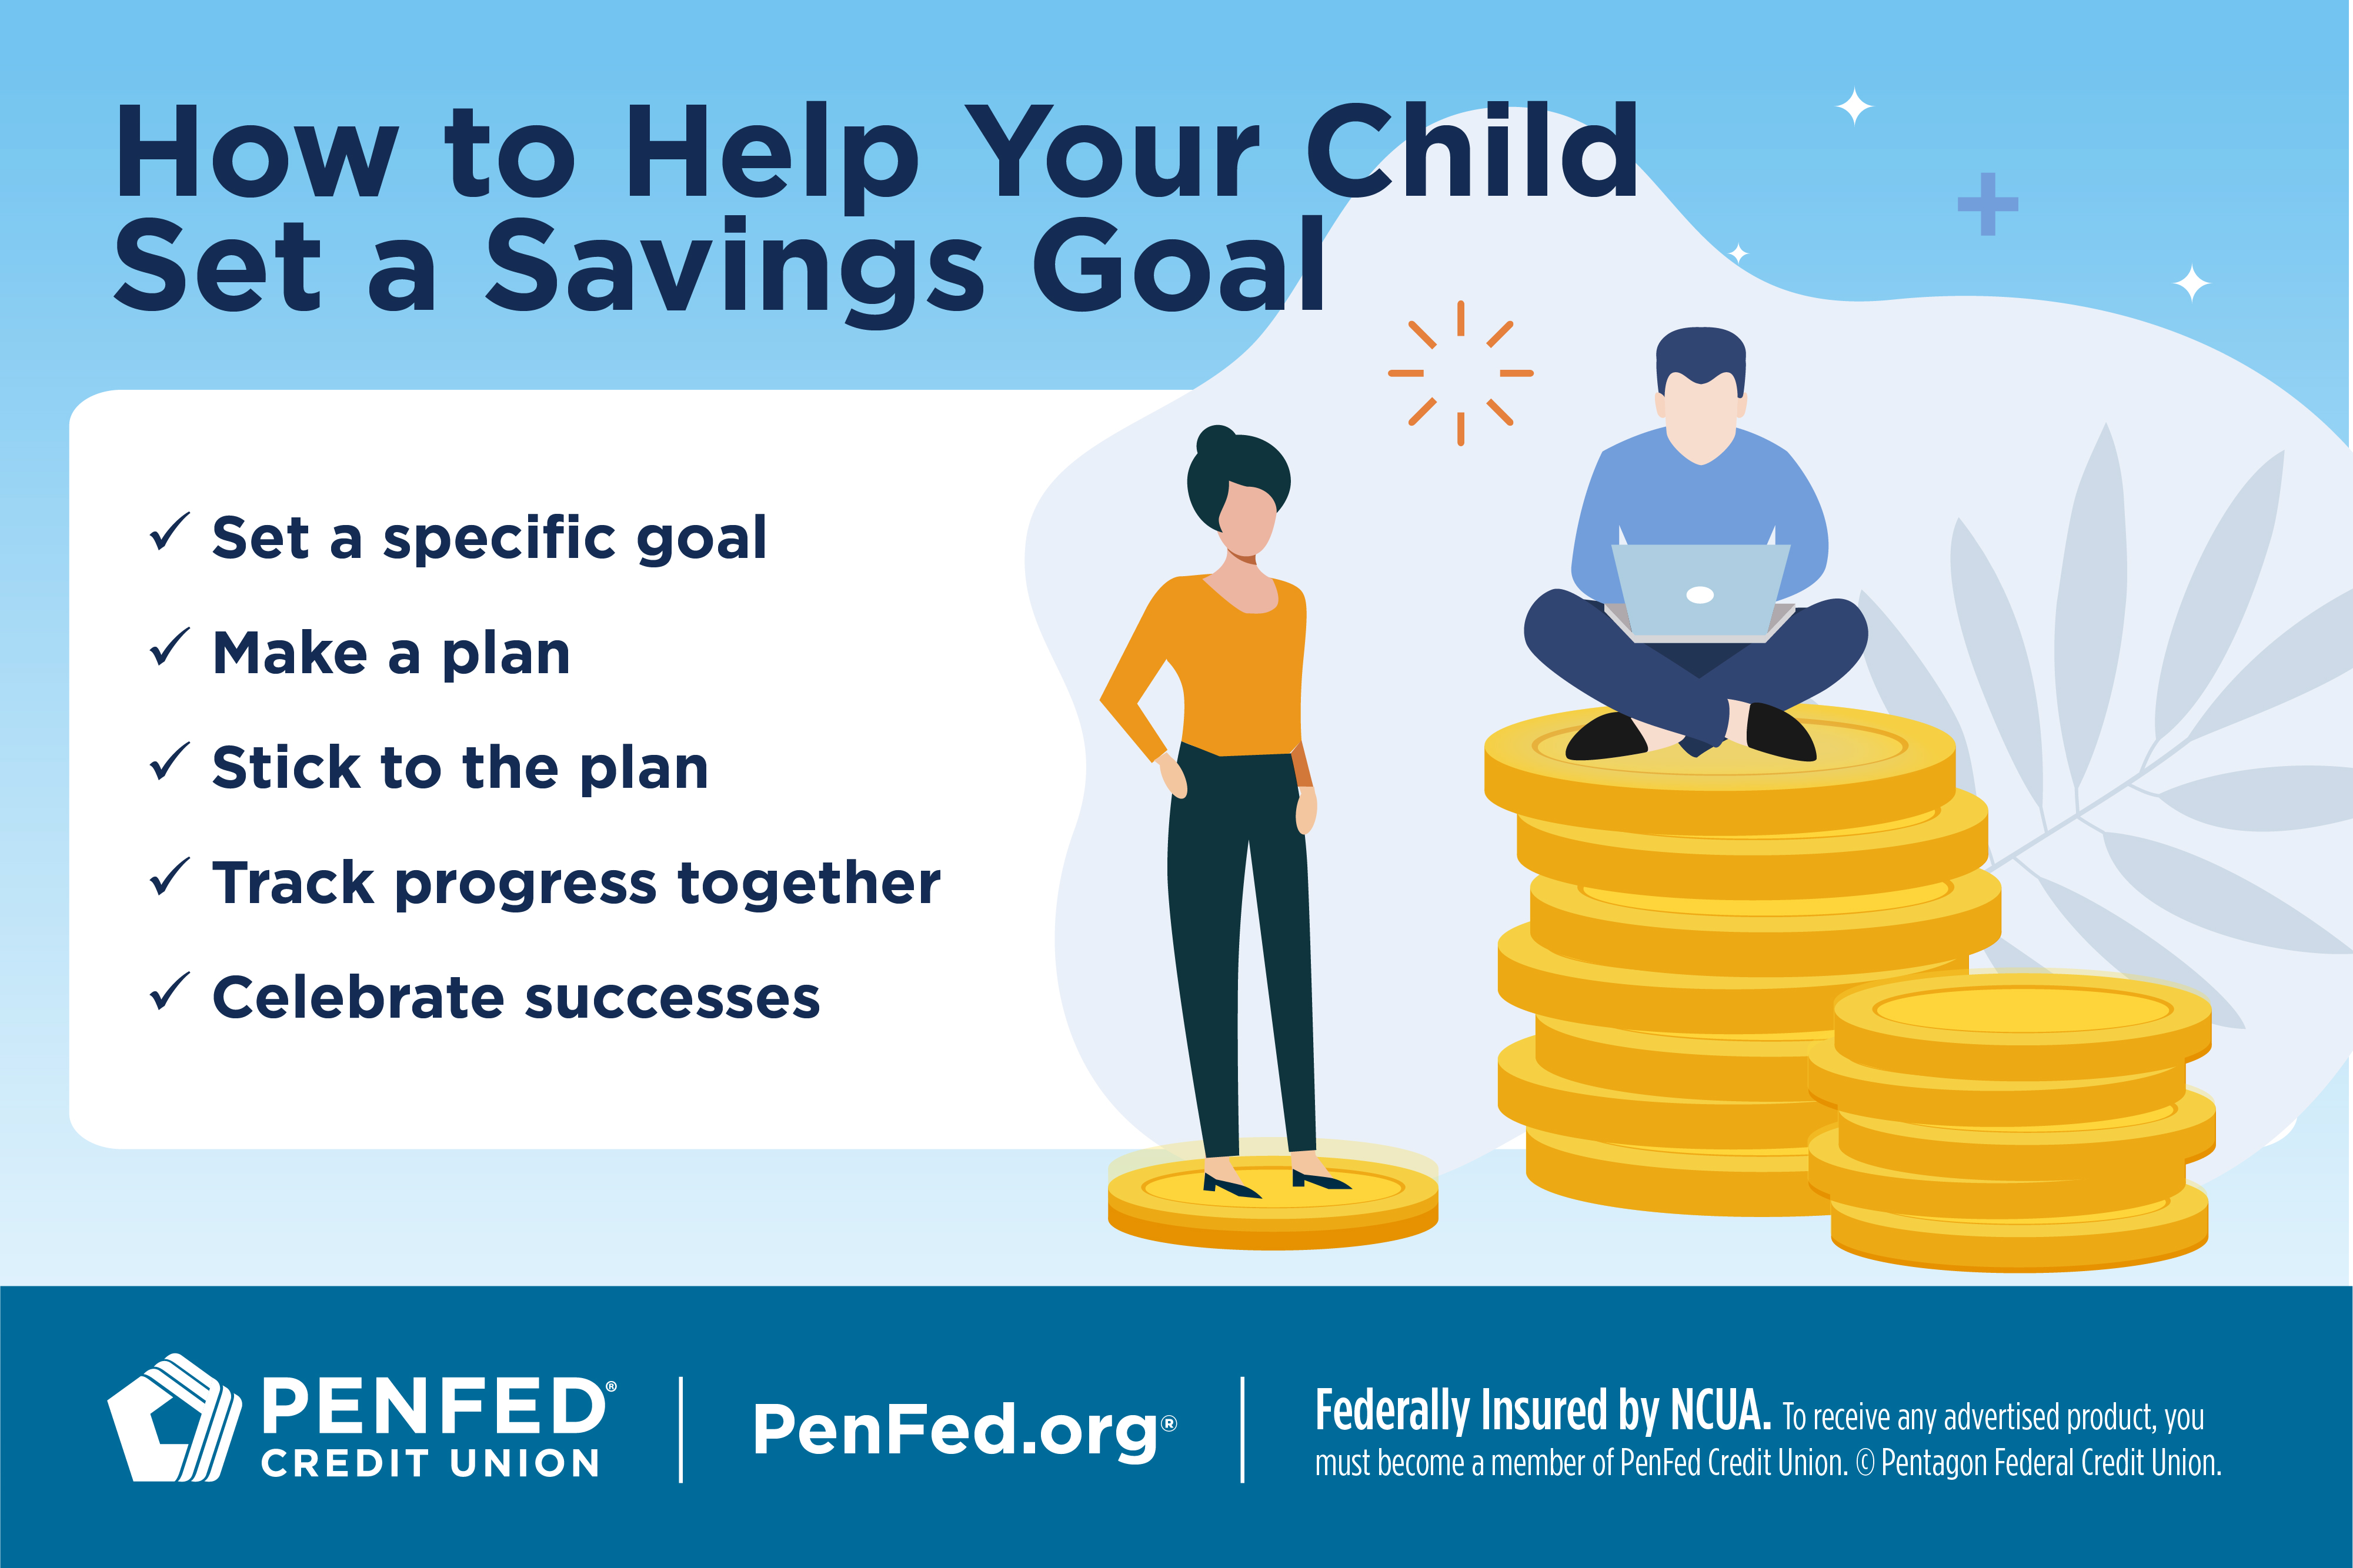 How to Set a Savings Goal